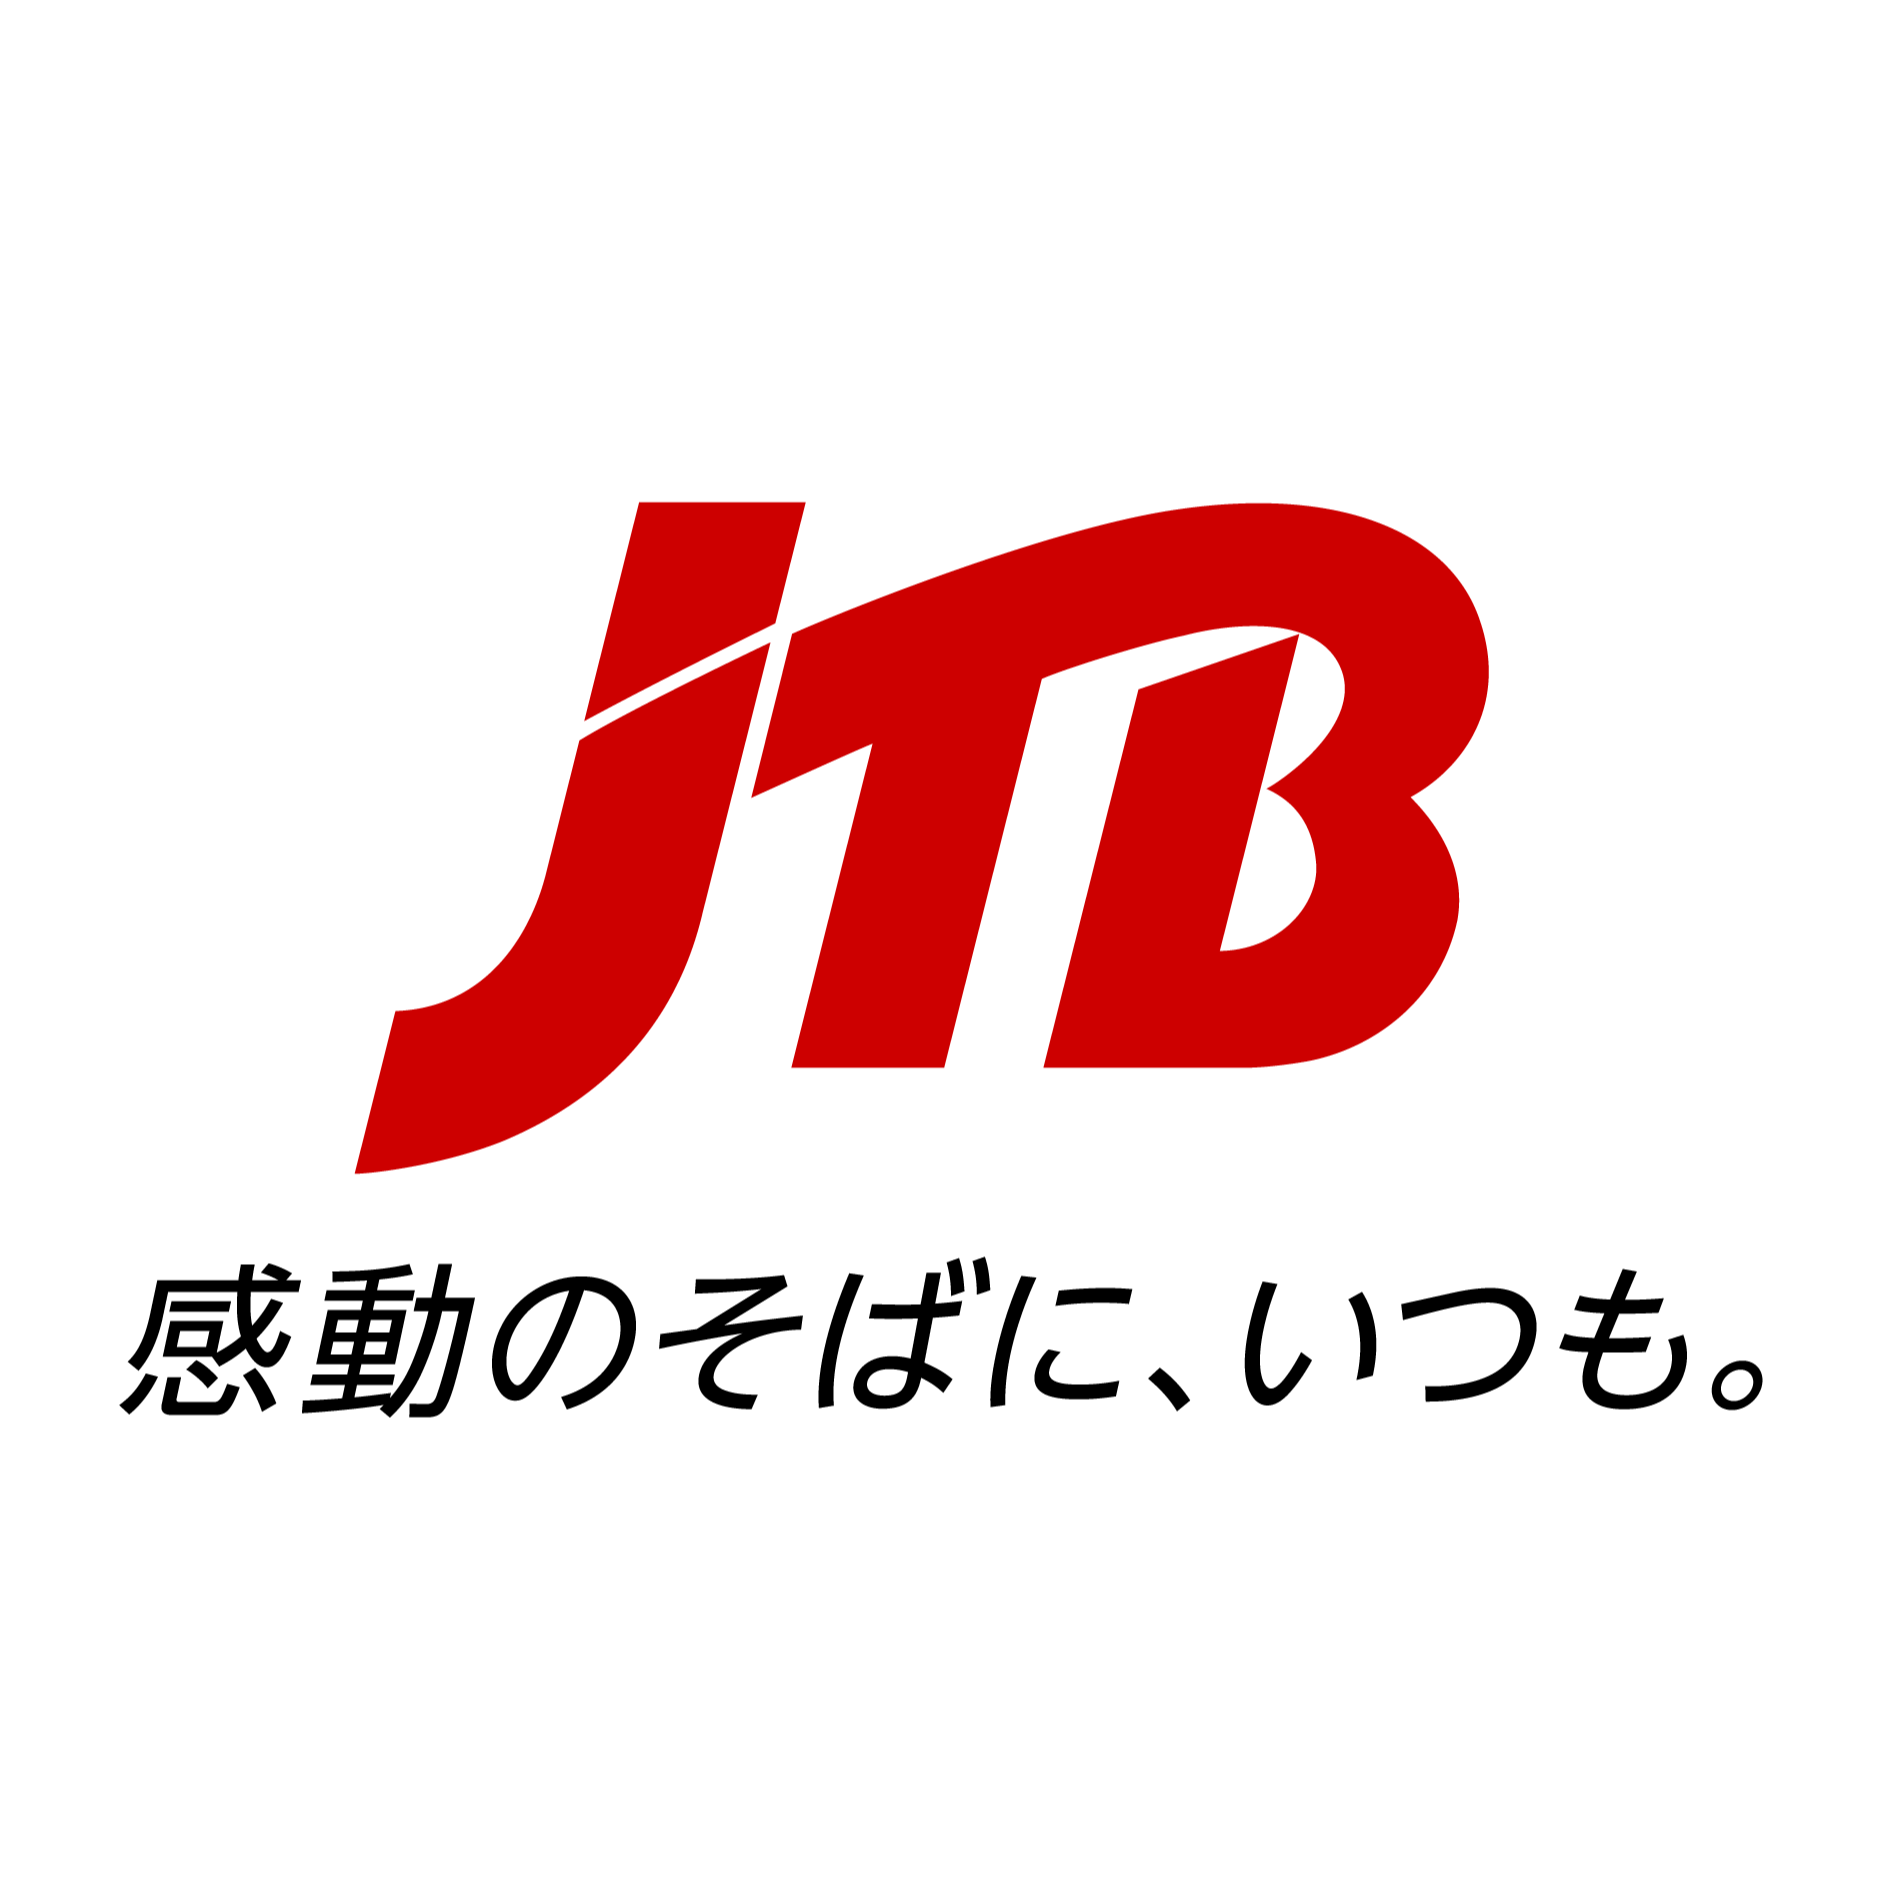 JTB 豊橋支店 Logo